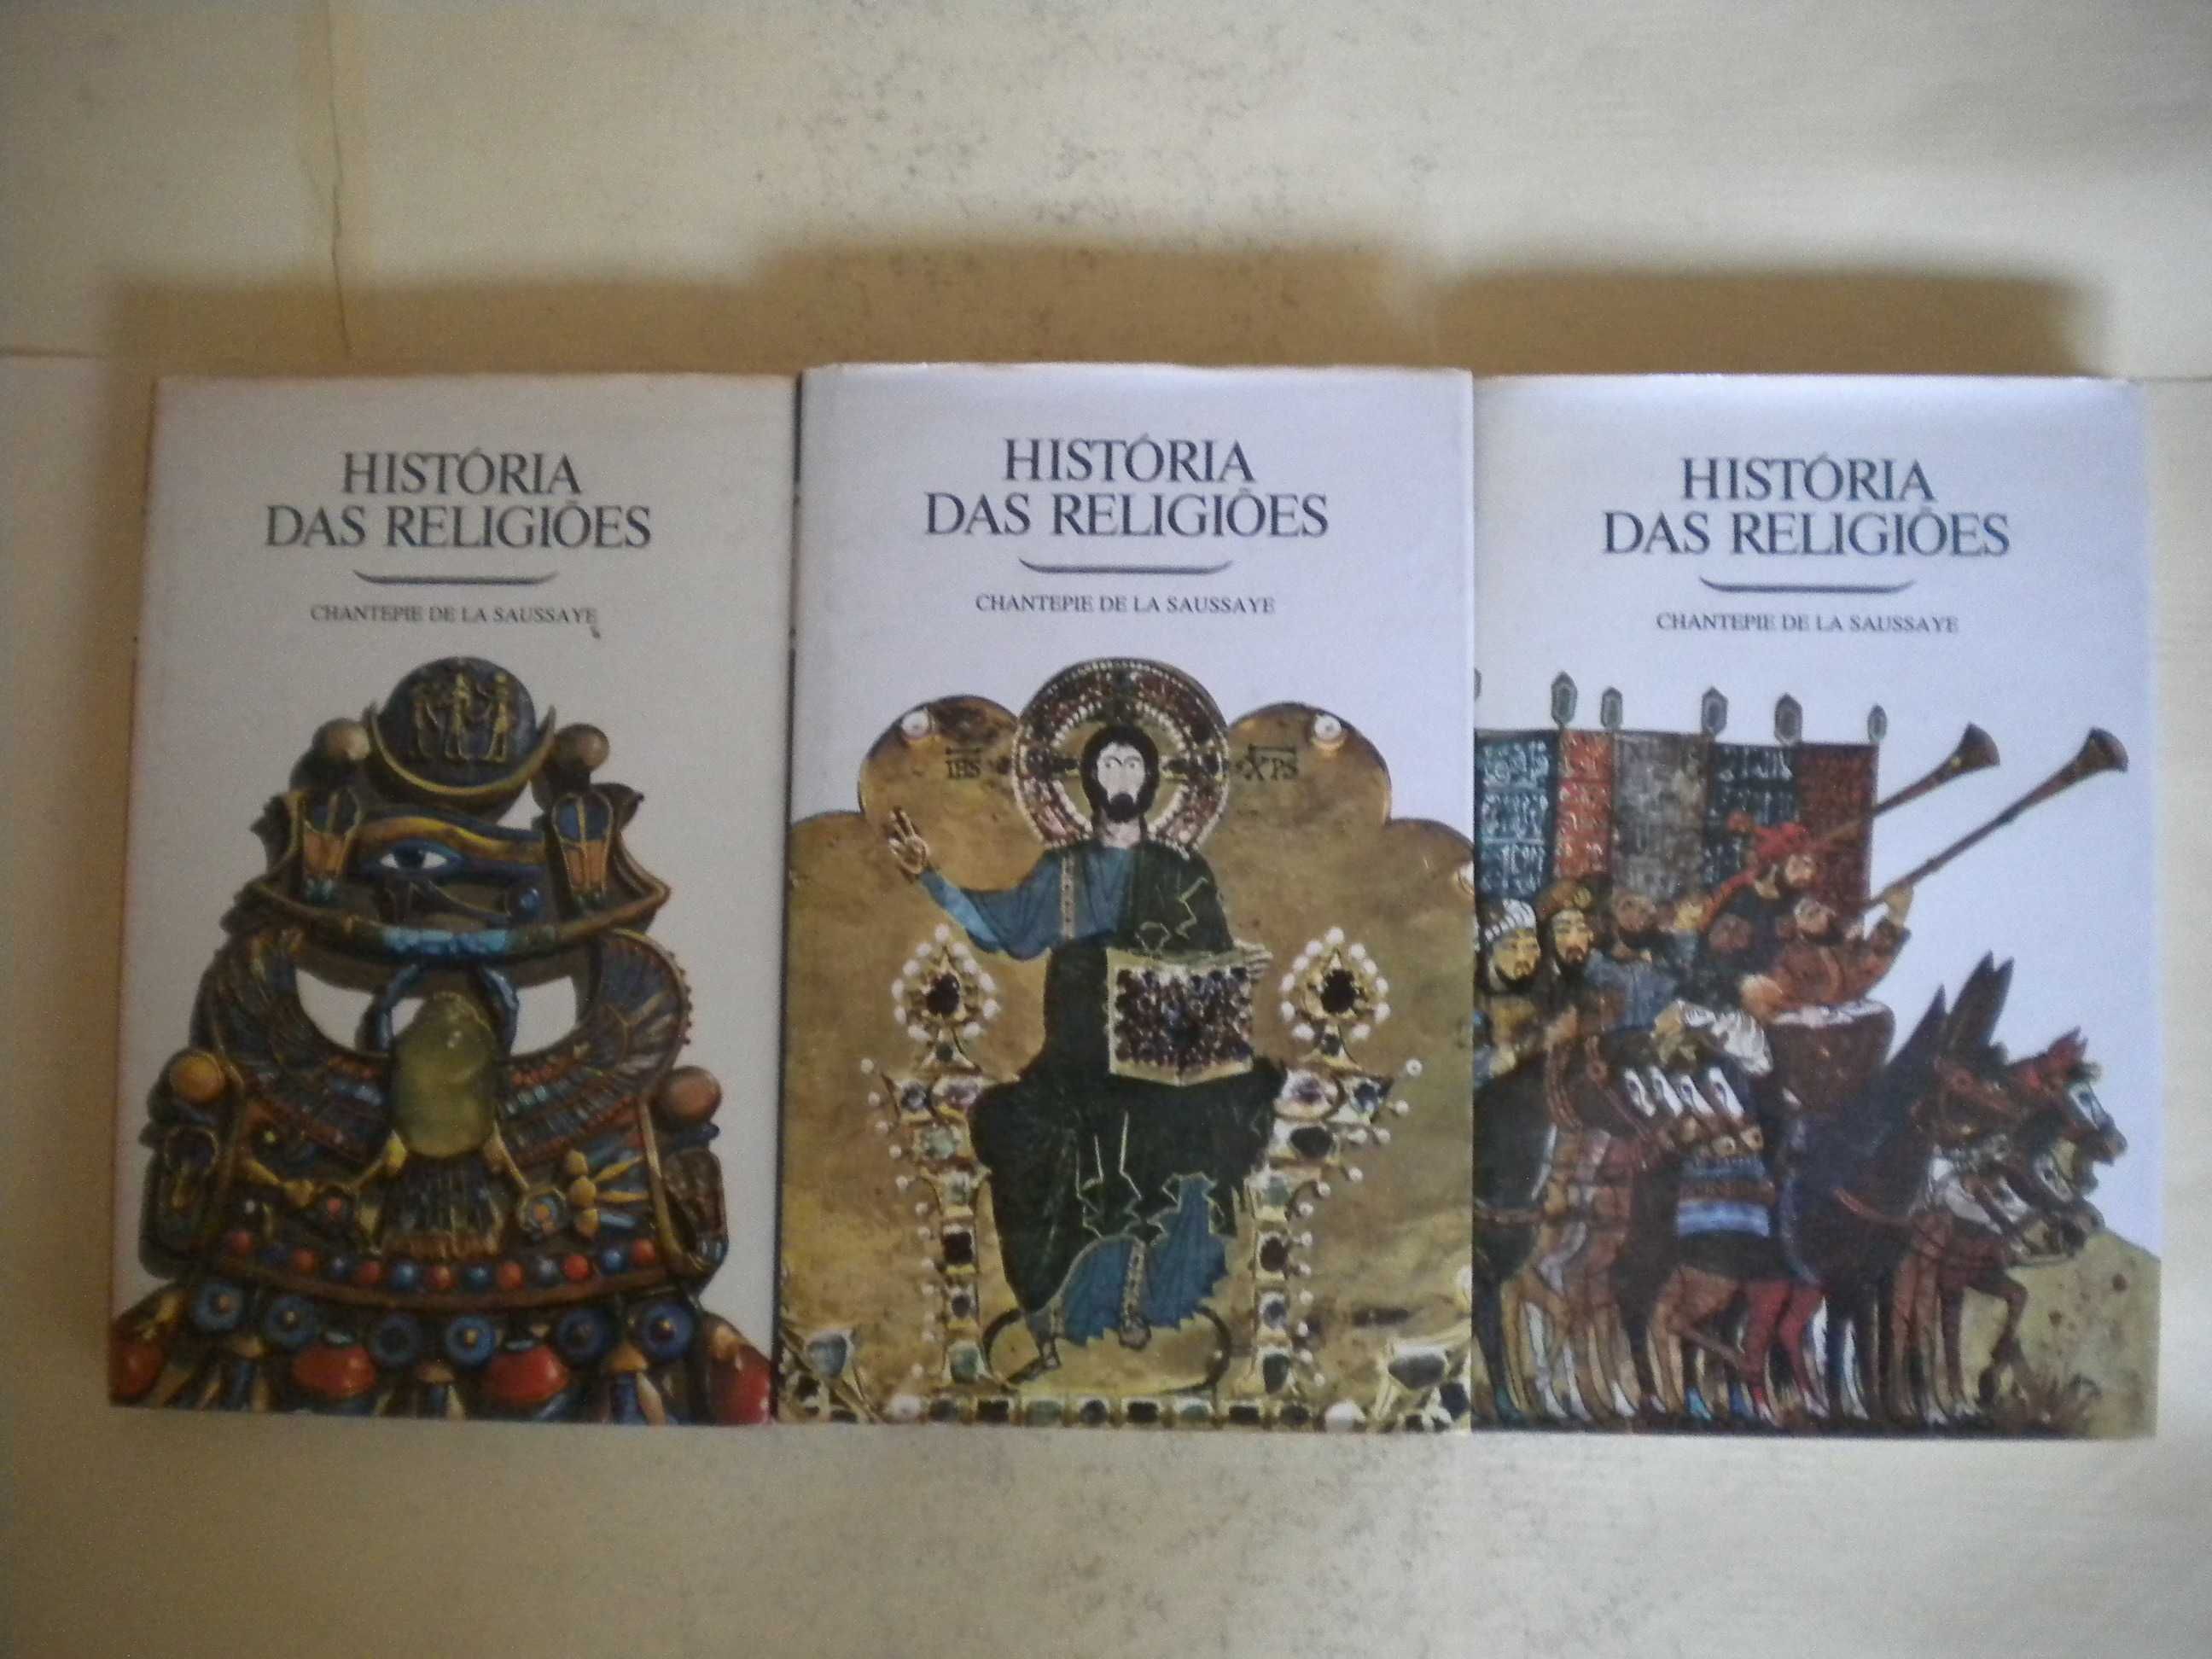 História das Religiões
de Chantepie de la Saussaye